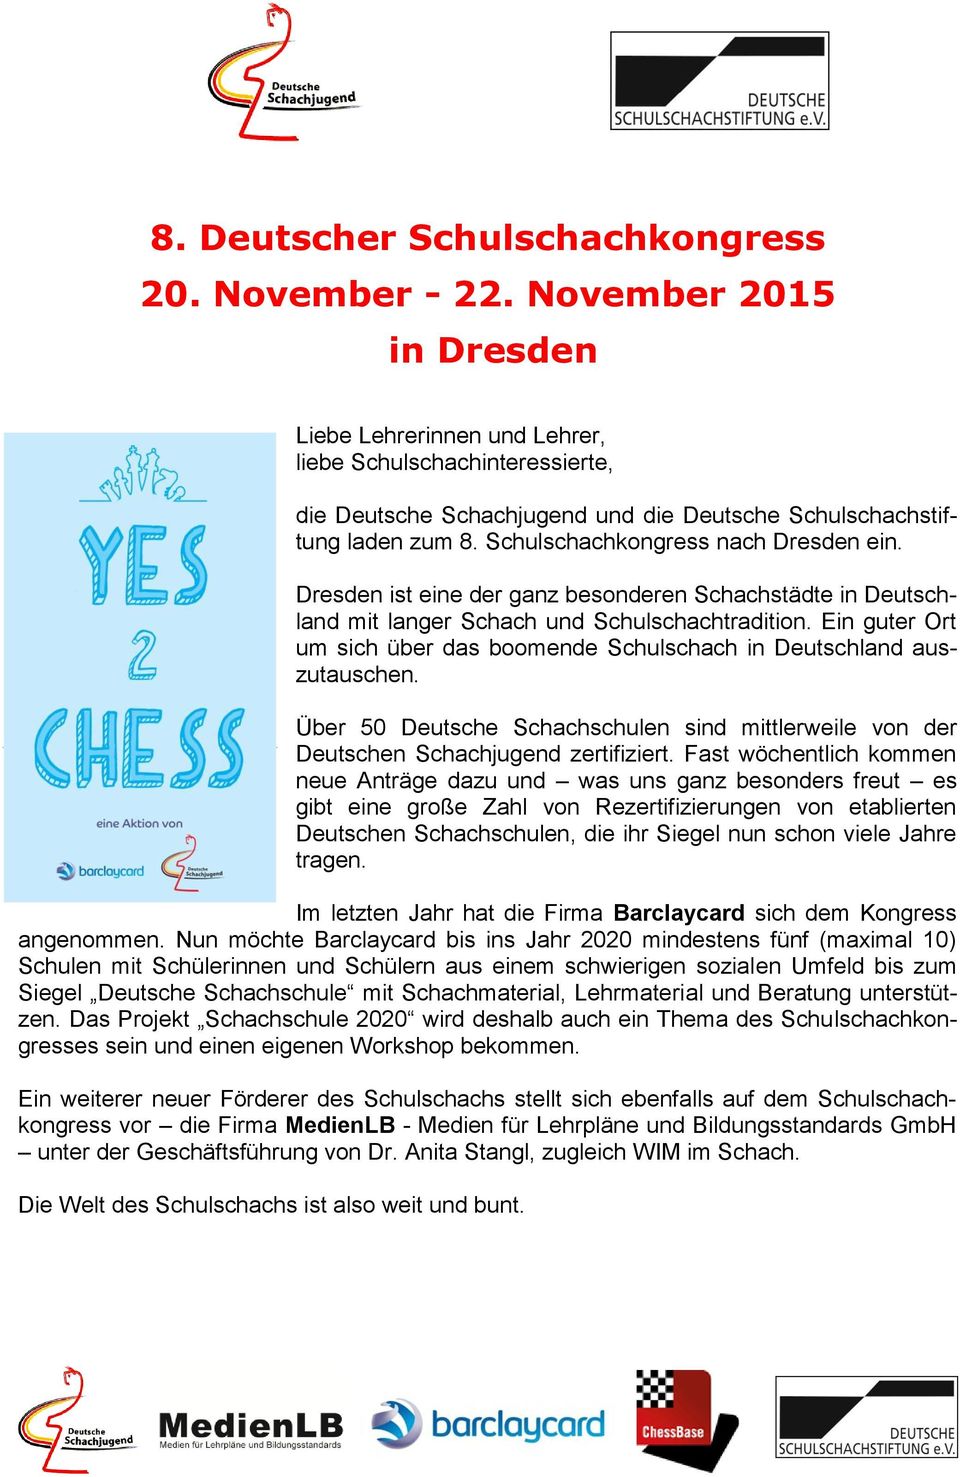 Dresden ist eine der ganz besonderen Schachstädte in Deutschland mit langer Schach und Schulschachtradition. Ein guter Ort um sich über das boomende Schulschach in Deutschland auszutauschen.